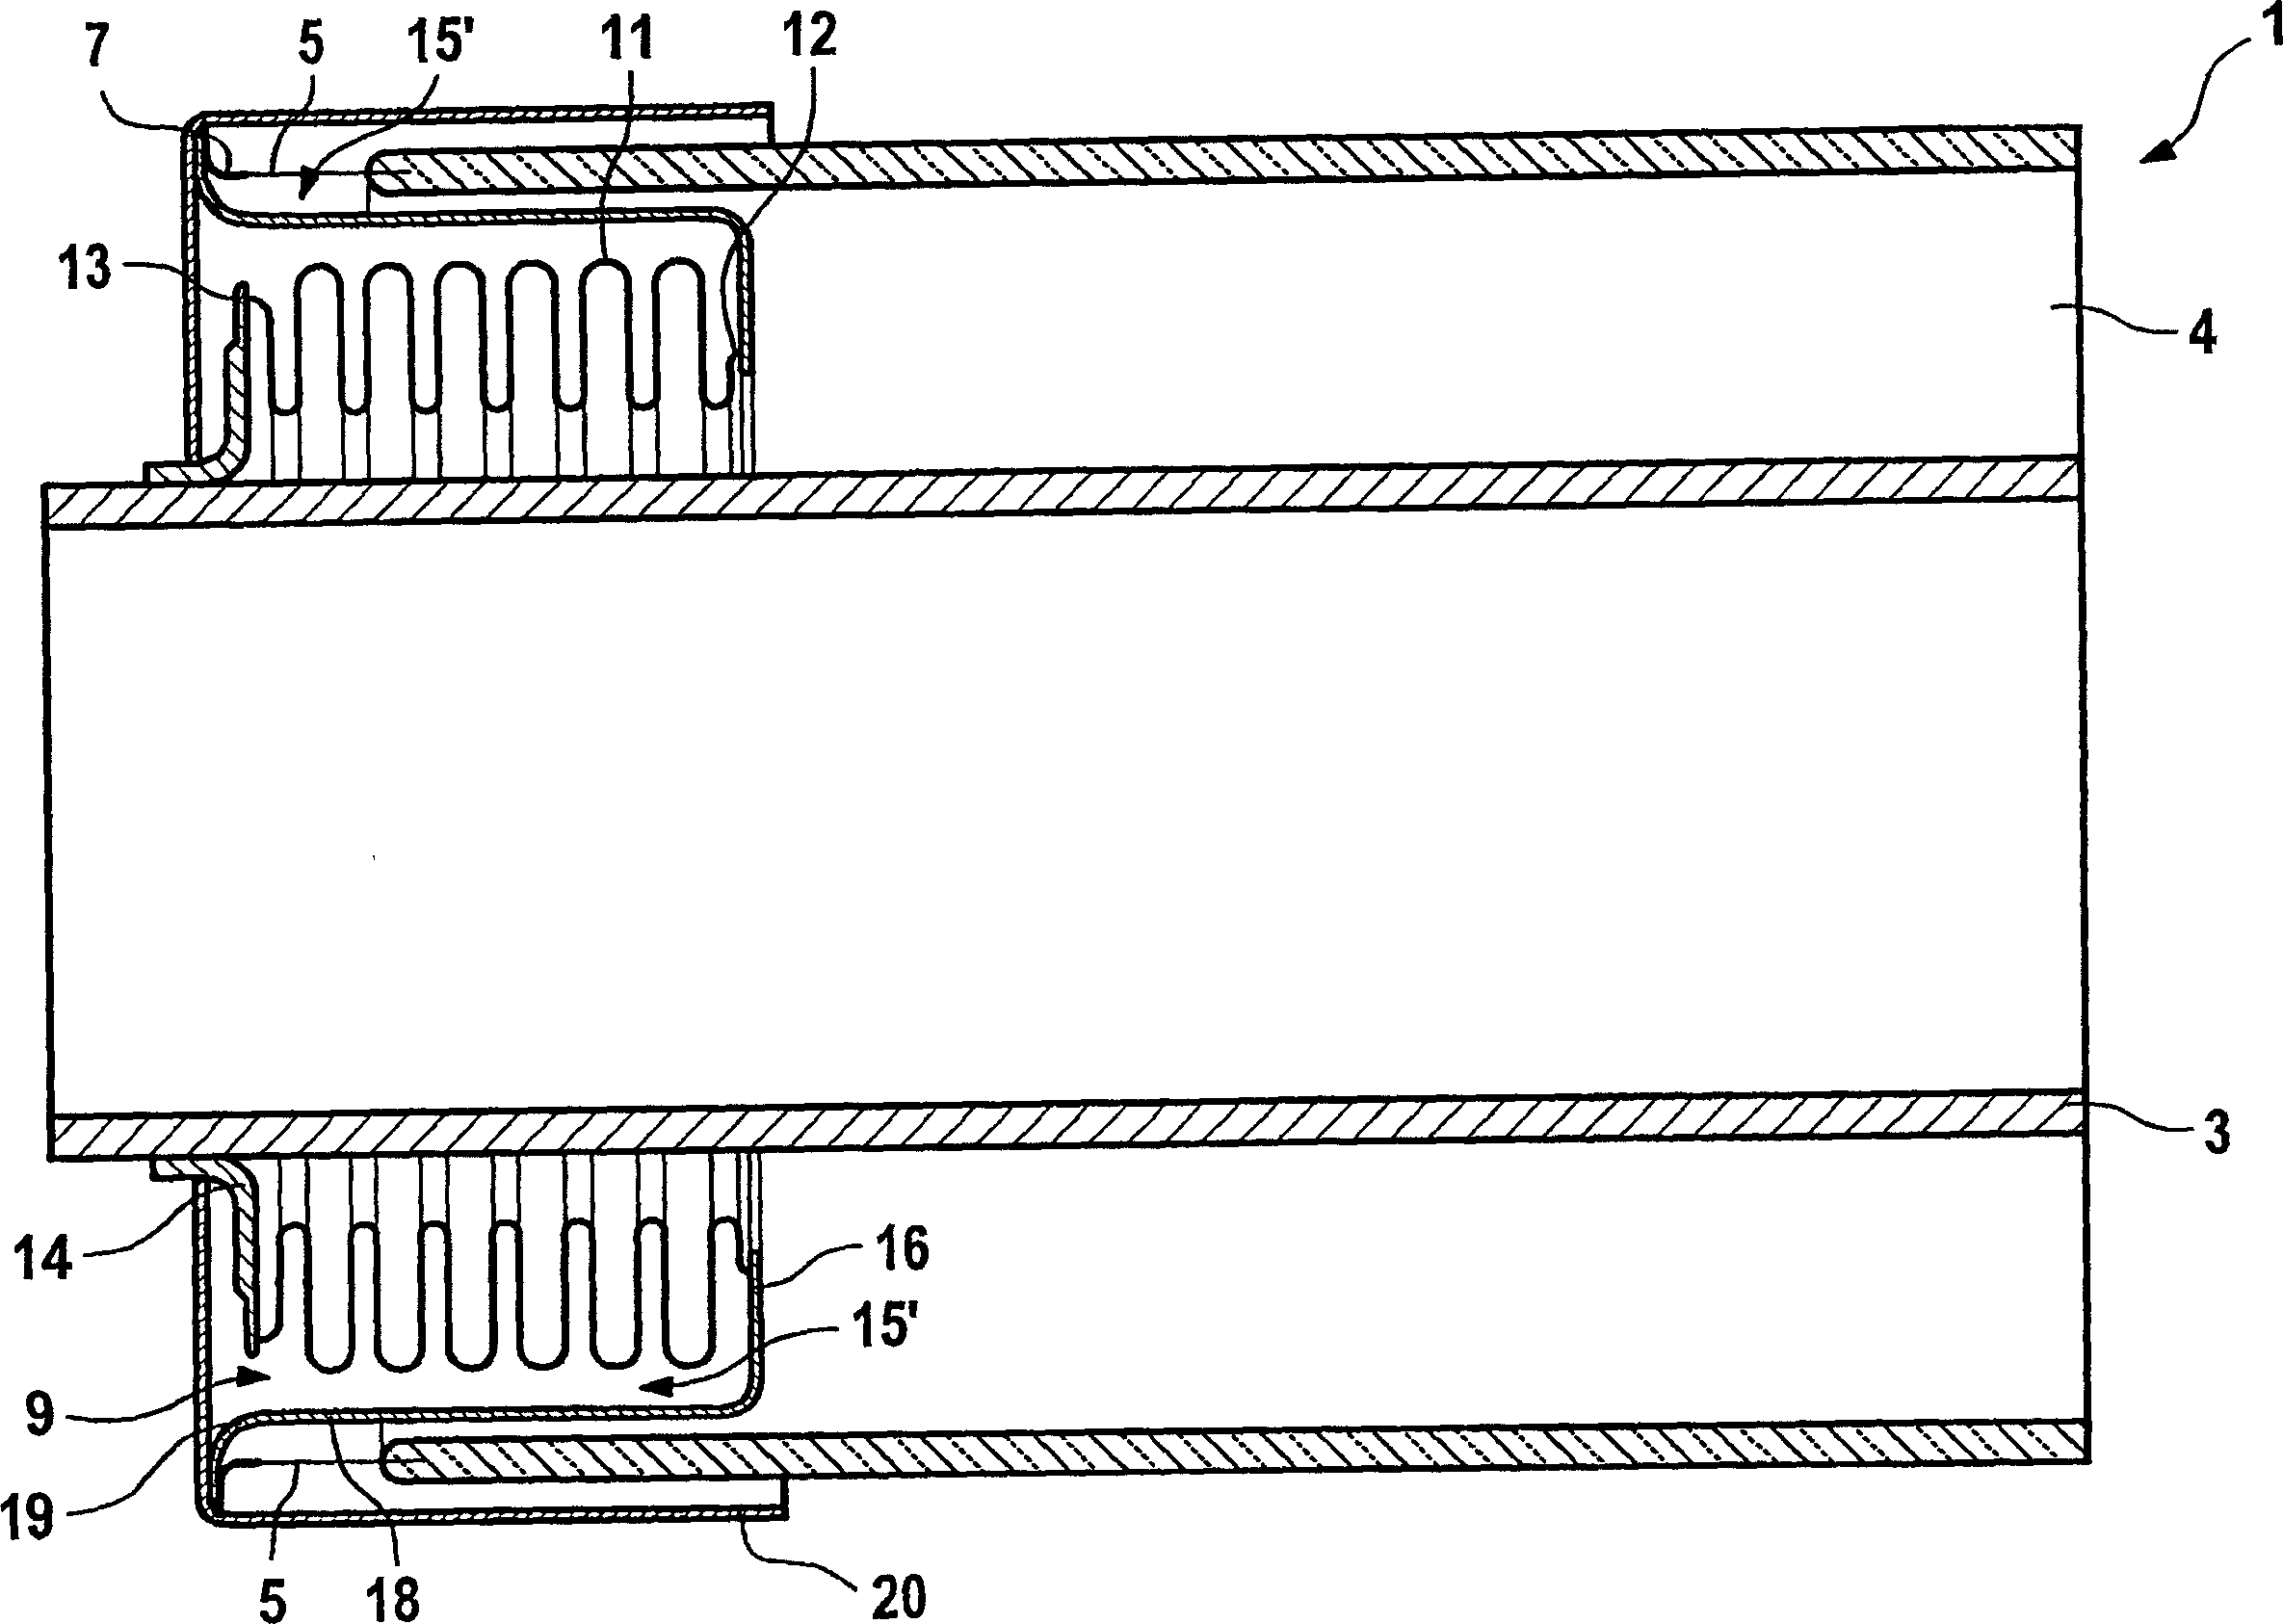 Heat absorption tube for solar energy